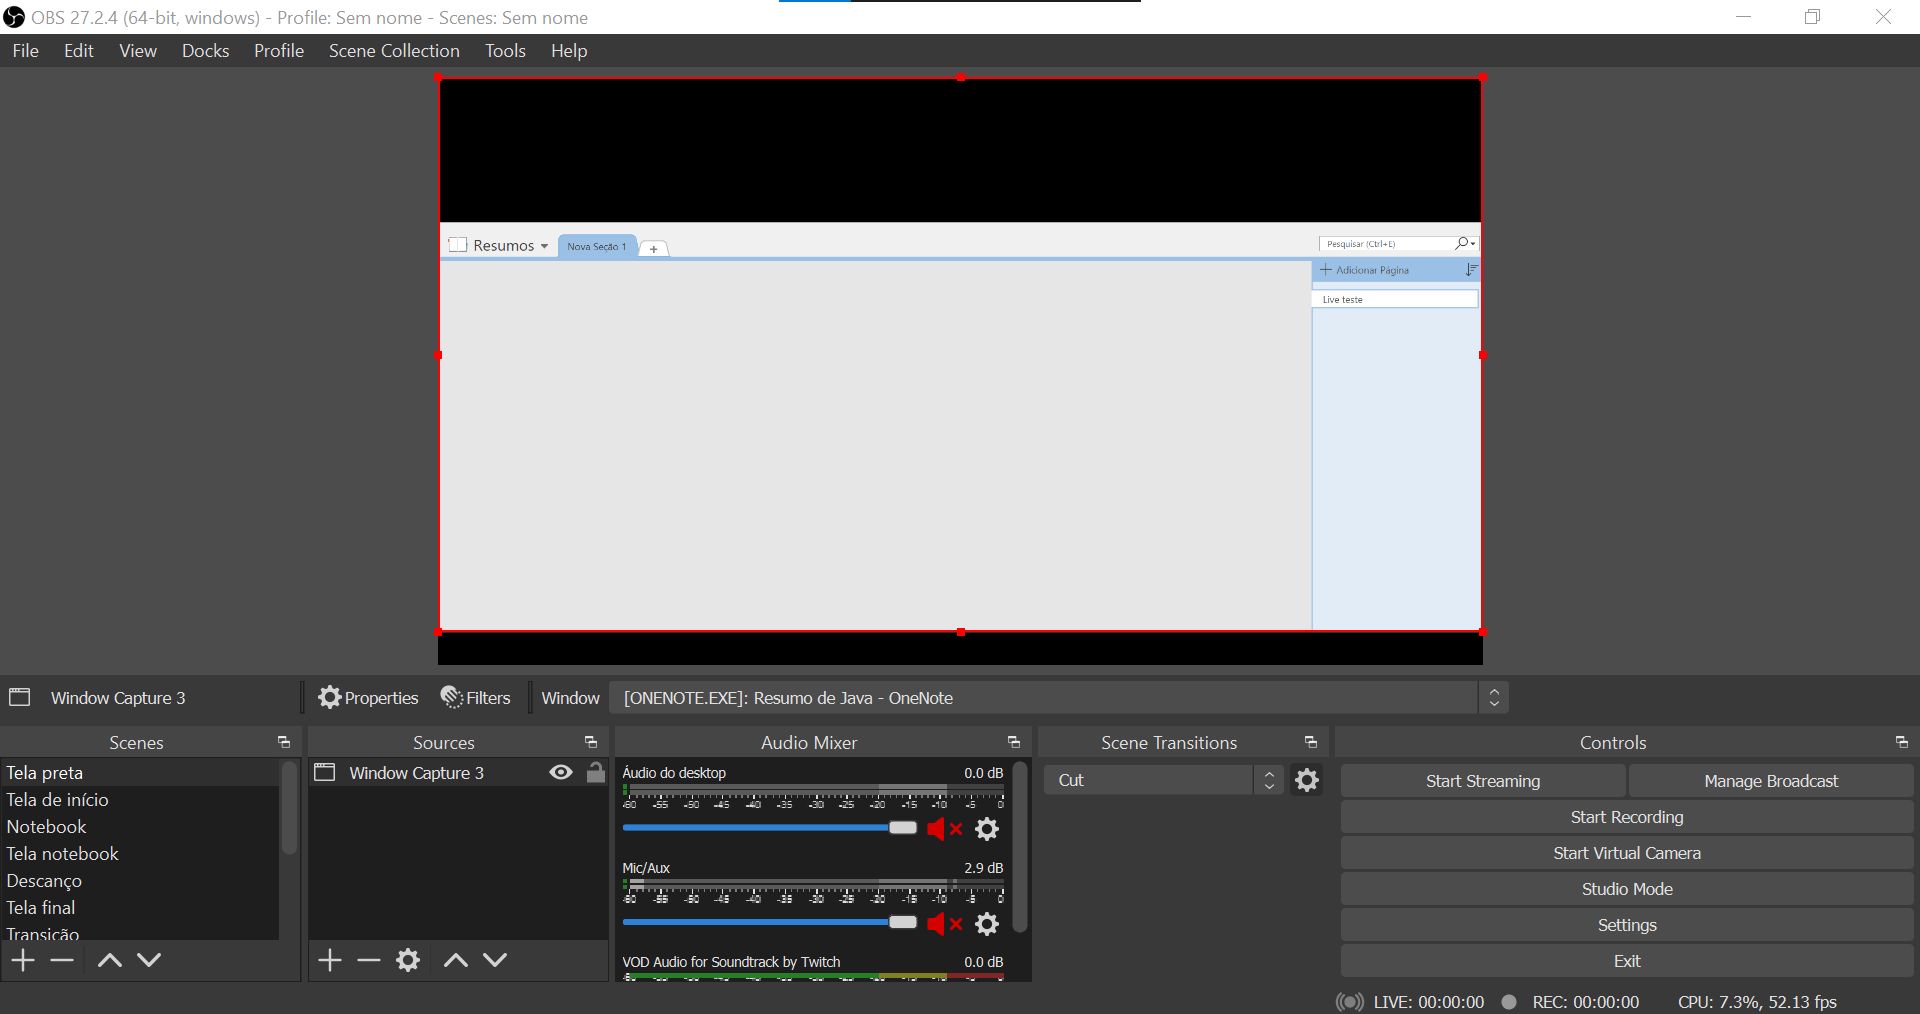 Captura de janela do Obs Studio 22.0.2 não funciona. - Programas